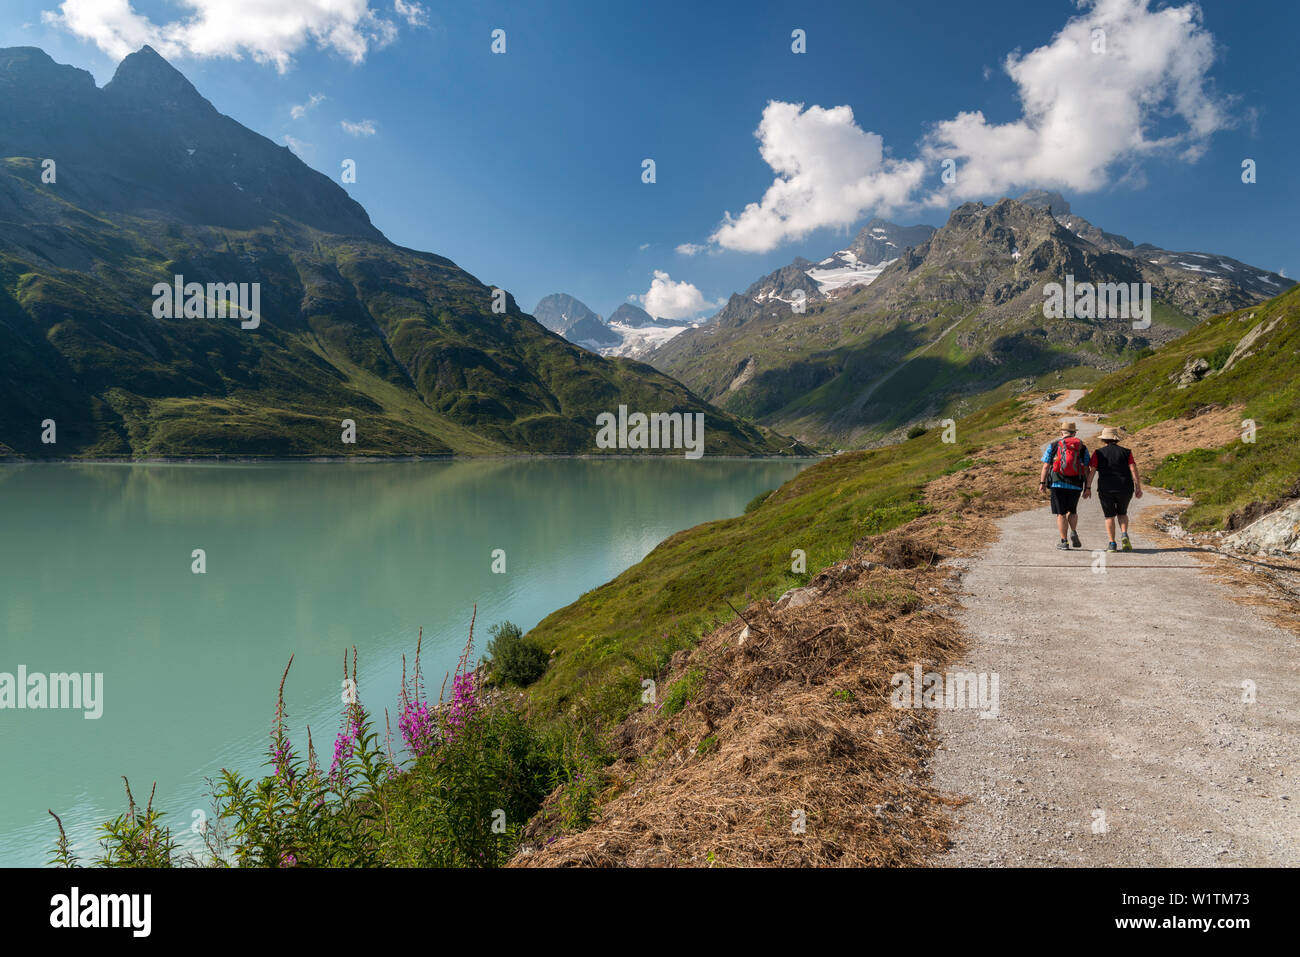 Lake Silvrettasee, footpath, Mt. Hohes Rad, Mt. Schattenspitze, Glacier Schattenspitzgletscher, Bludenz, Vorarlberg, Austria, Europe Stock Photo